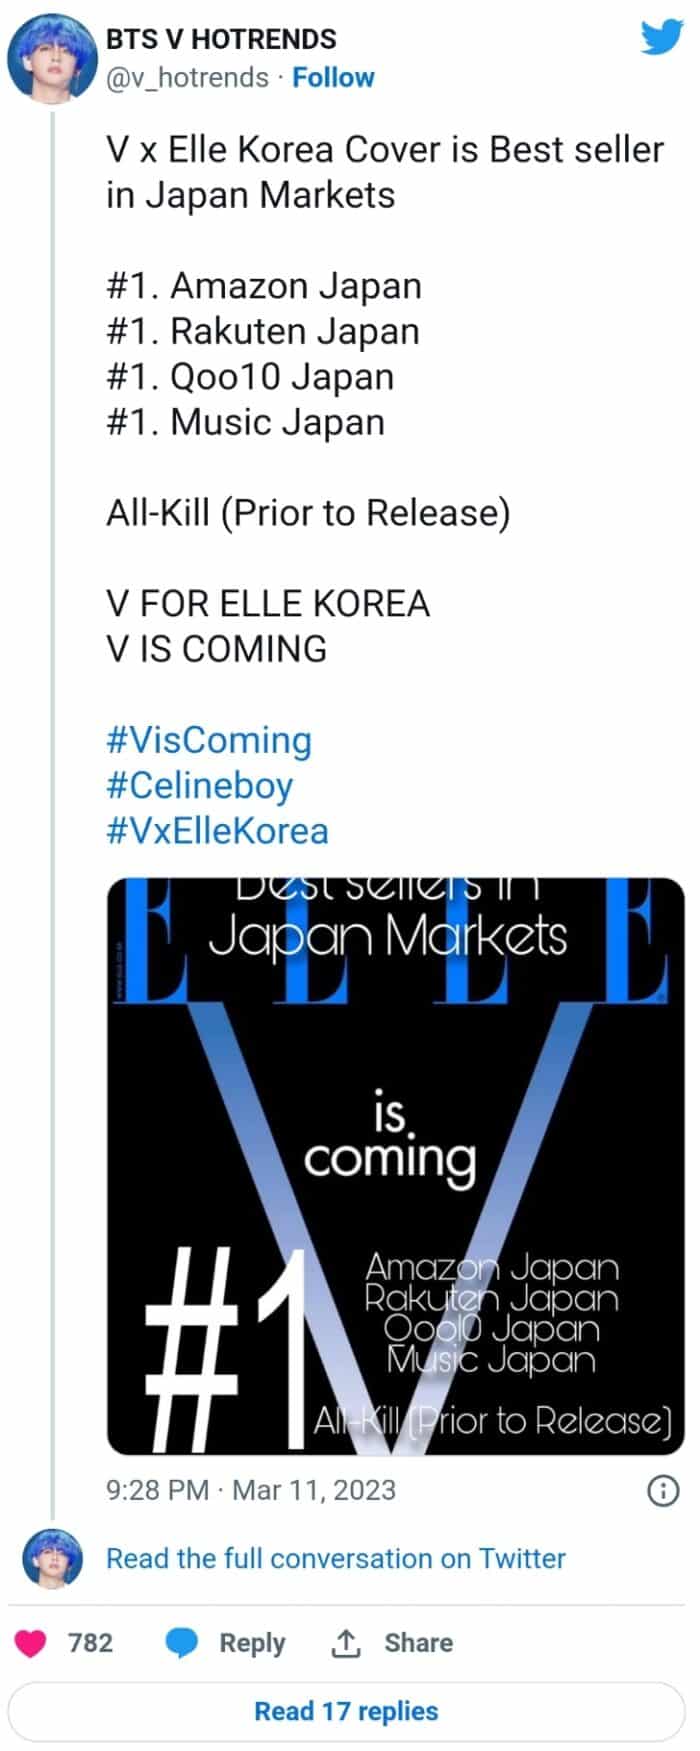 Ви из BTS появится на обложке ELLE Korea 